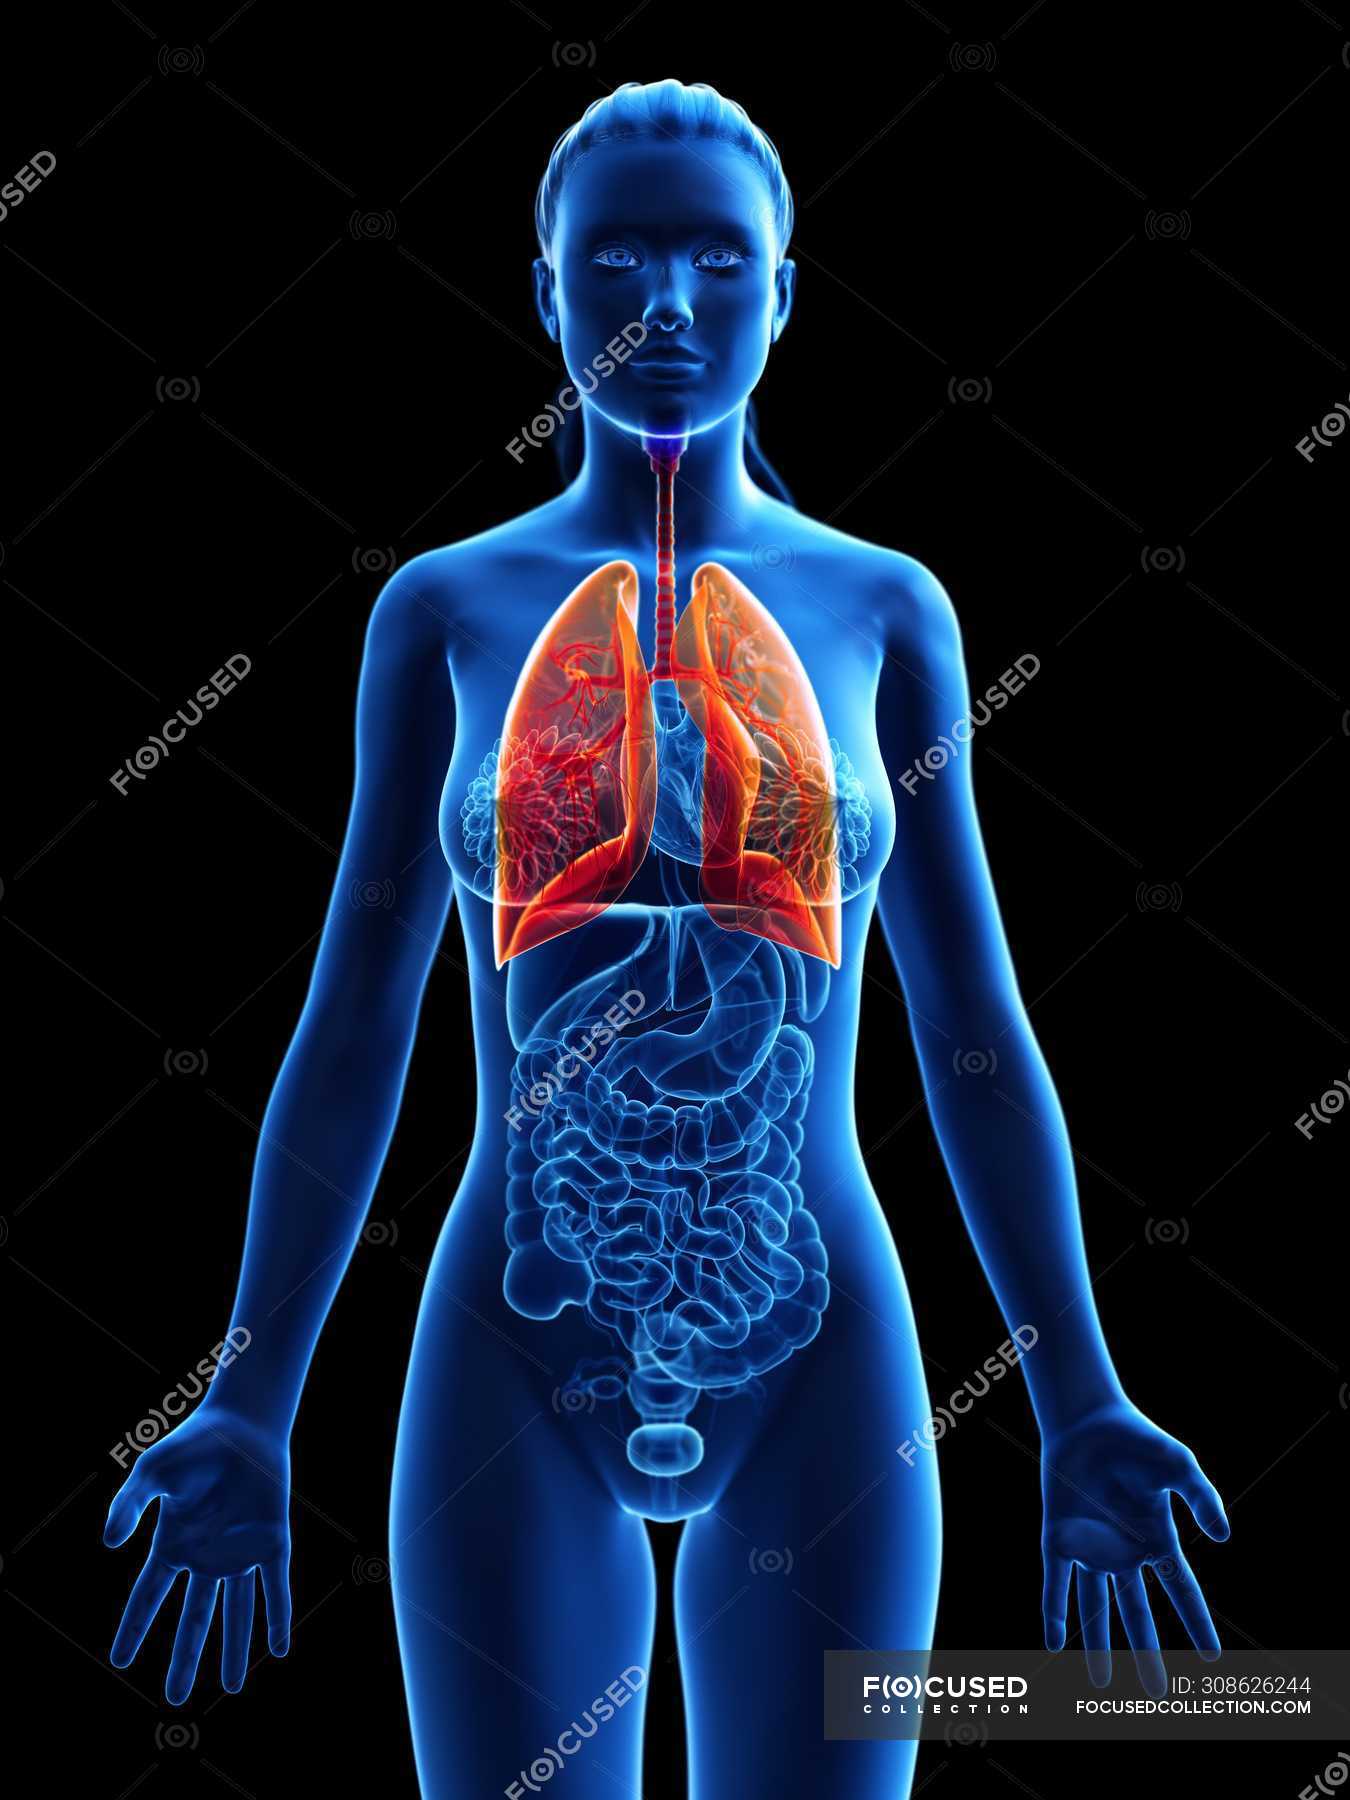 Modelo anatómico femenino con pulmones coloreados y visibles, ilustración  por ordenador . — Medicina, biología - Stock Photo | #308626244